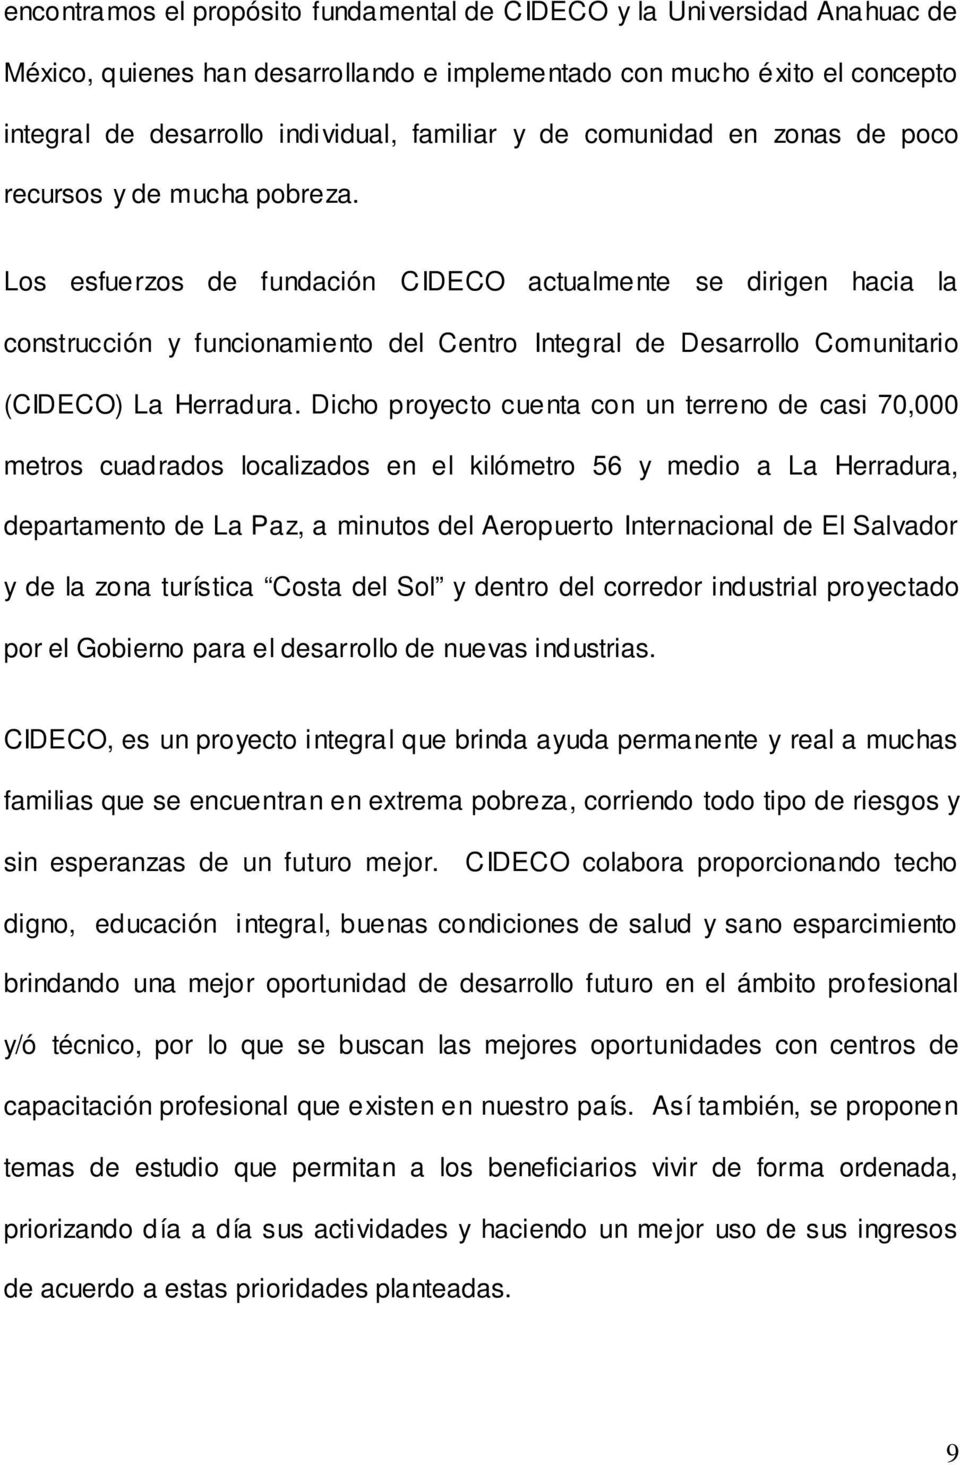 Los esfuerzos de fundación CIDECO actualmente se dirigen hacia la construcción y funcionamiento del Centro Integral de Desarrollo Comunitario (CIDECO) La Herradura.